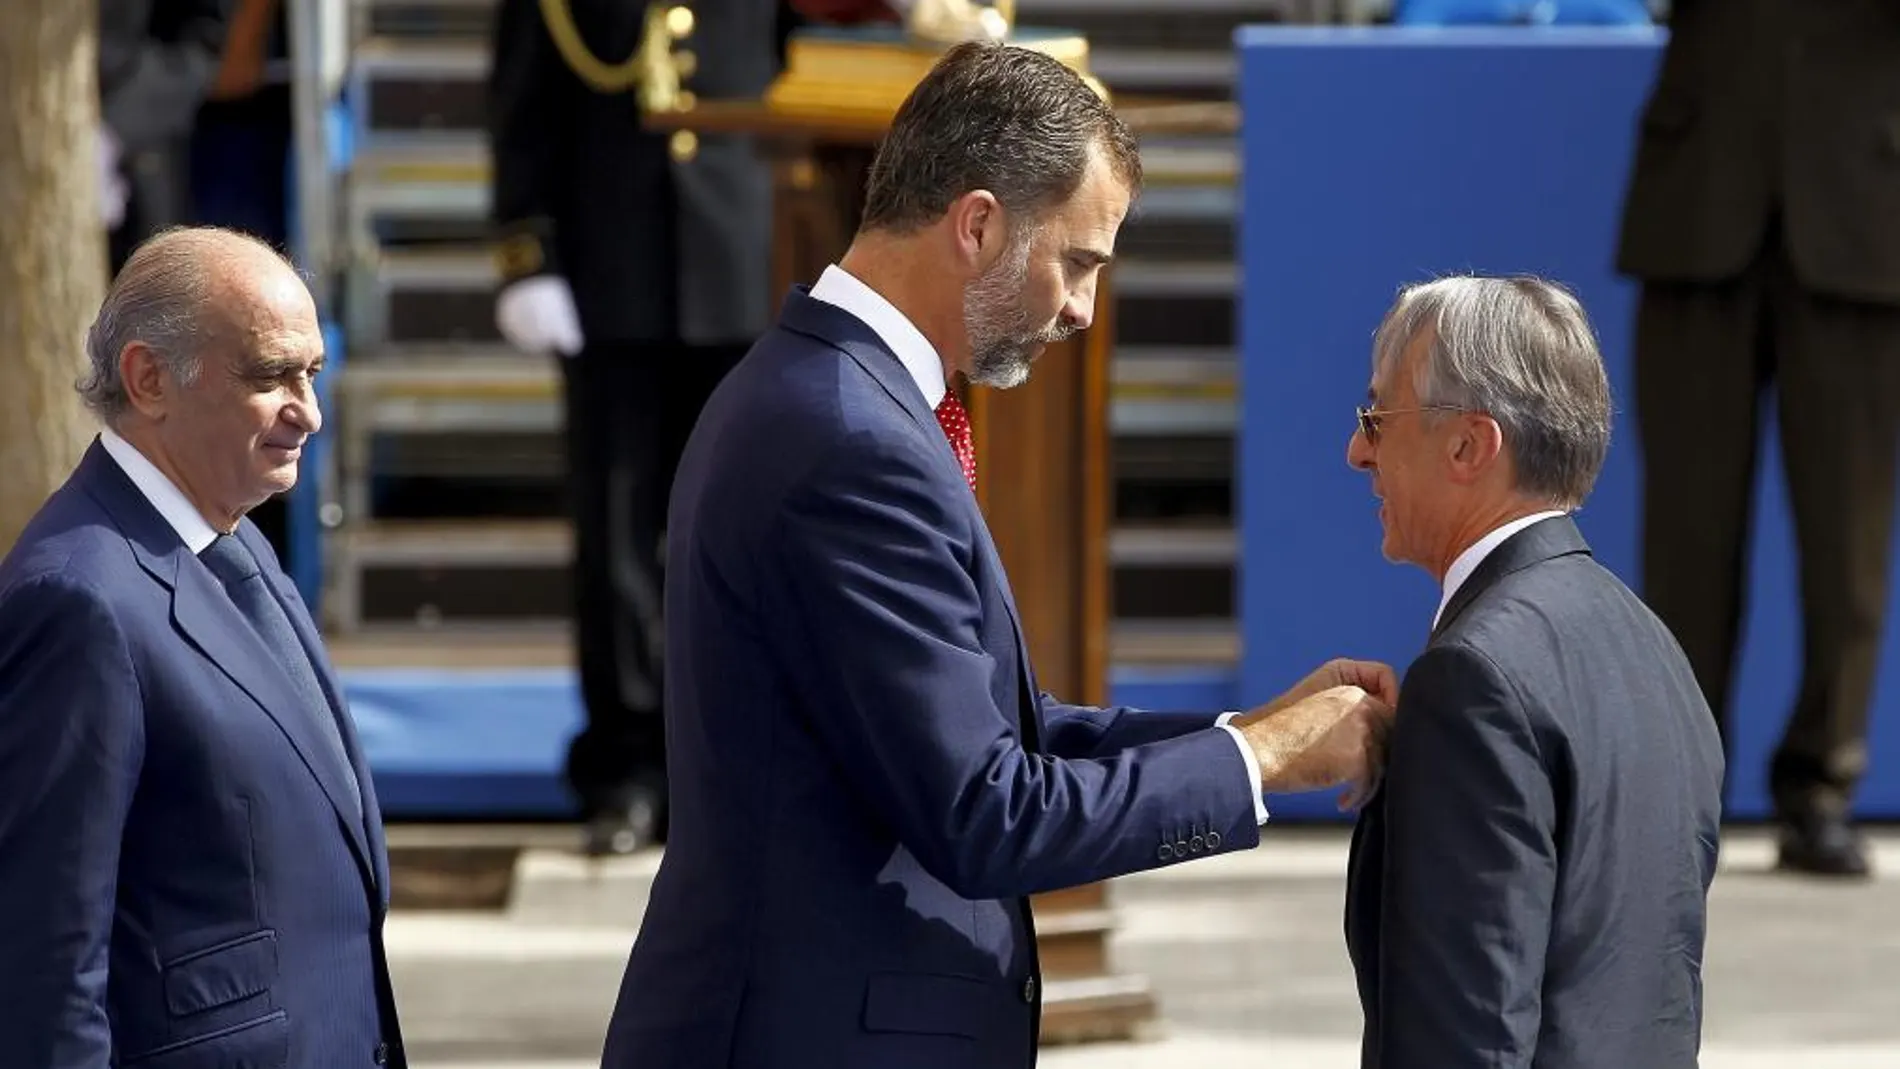 El Príncipe Felipe acompañado por el ministro del Interior, Jorge Fernández Díaz (izq.), impone la medalla de plata al director general de la Policía de Francia, Claude Baland, durante los actos centrales del Día de la Policía